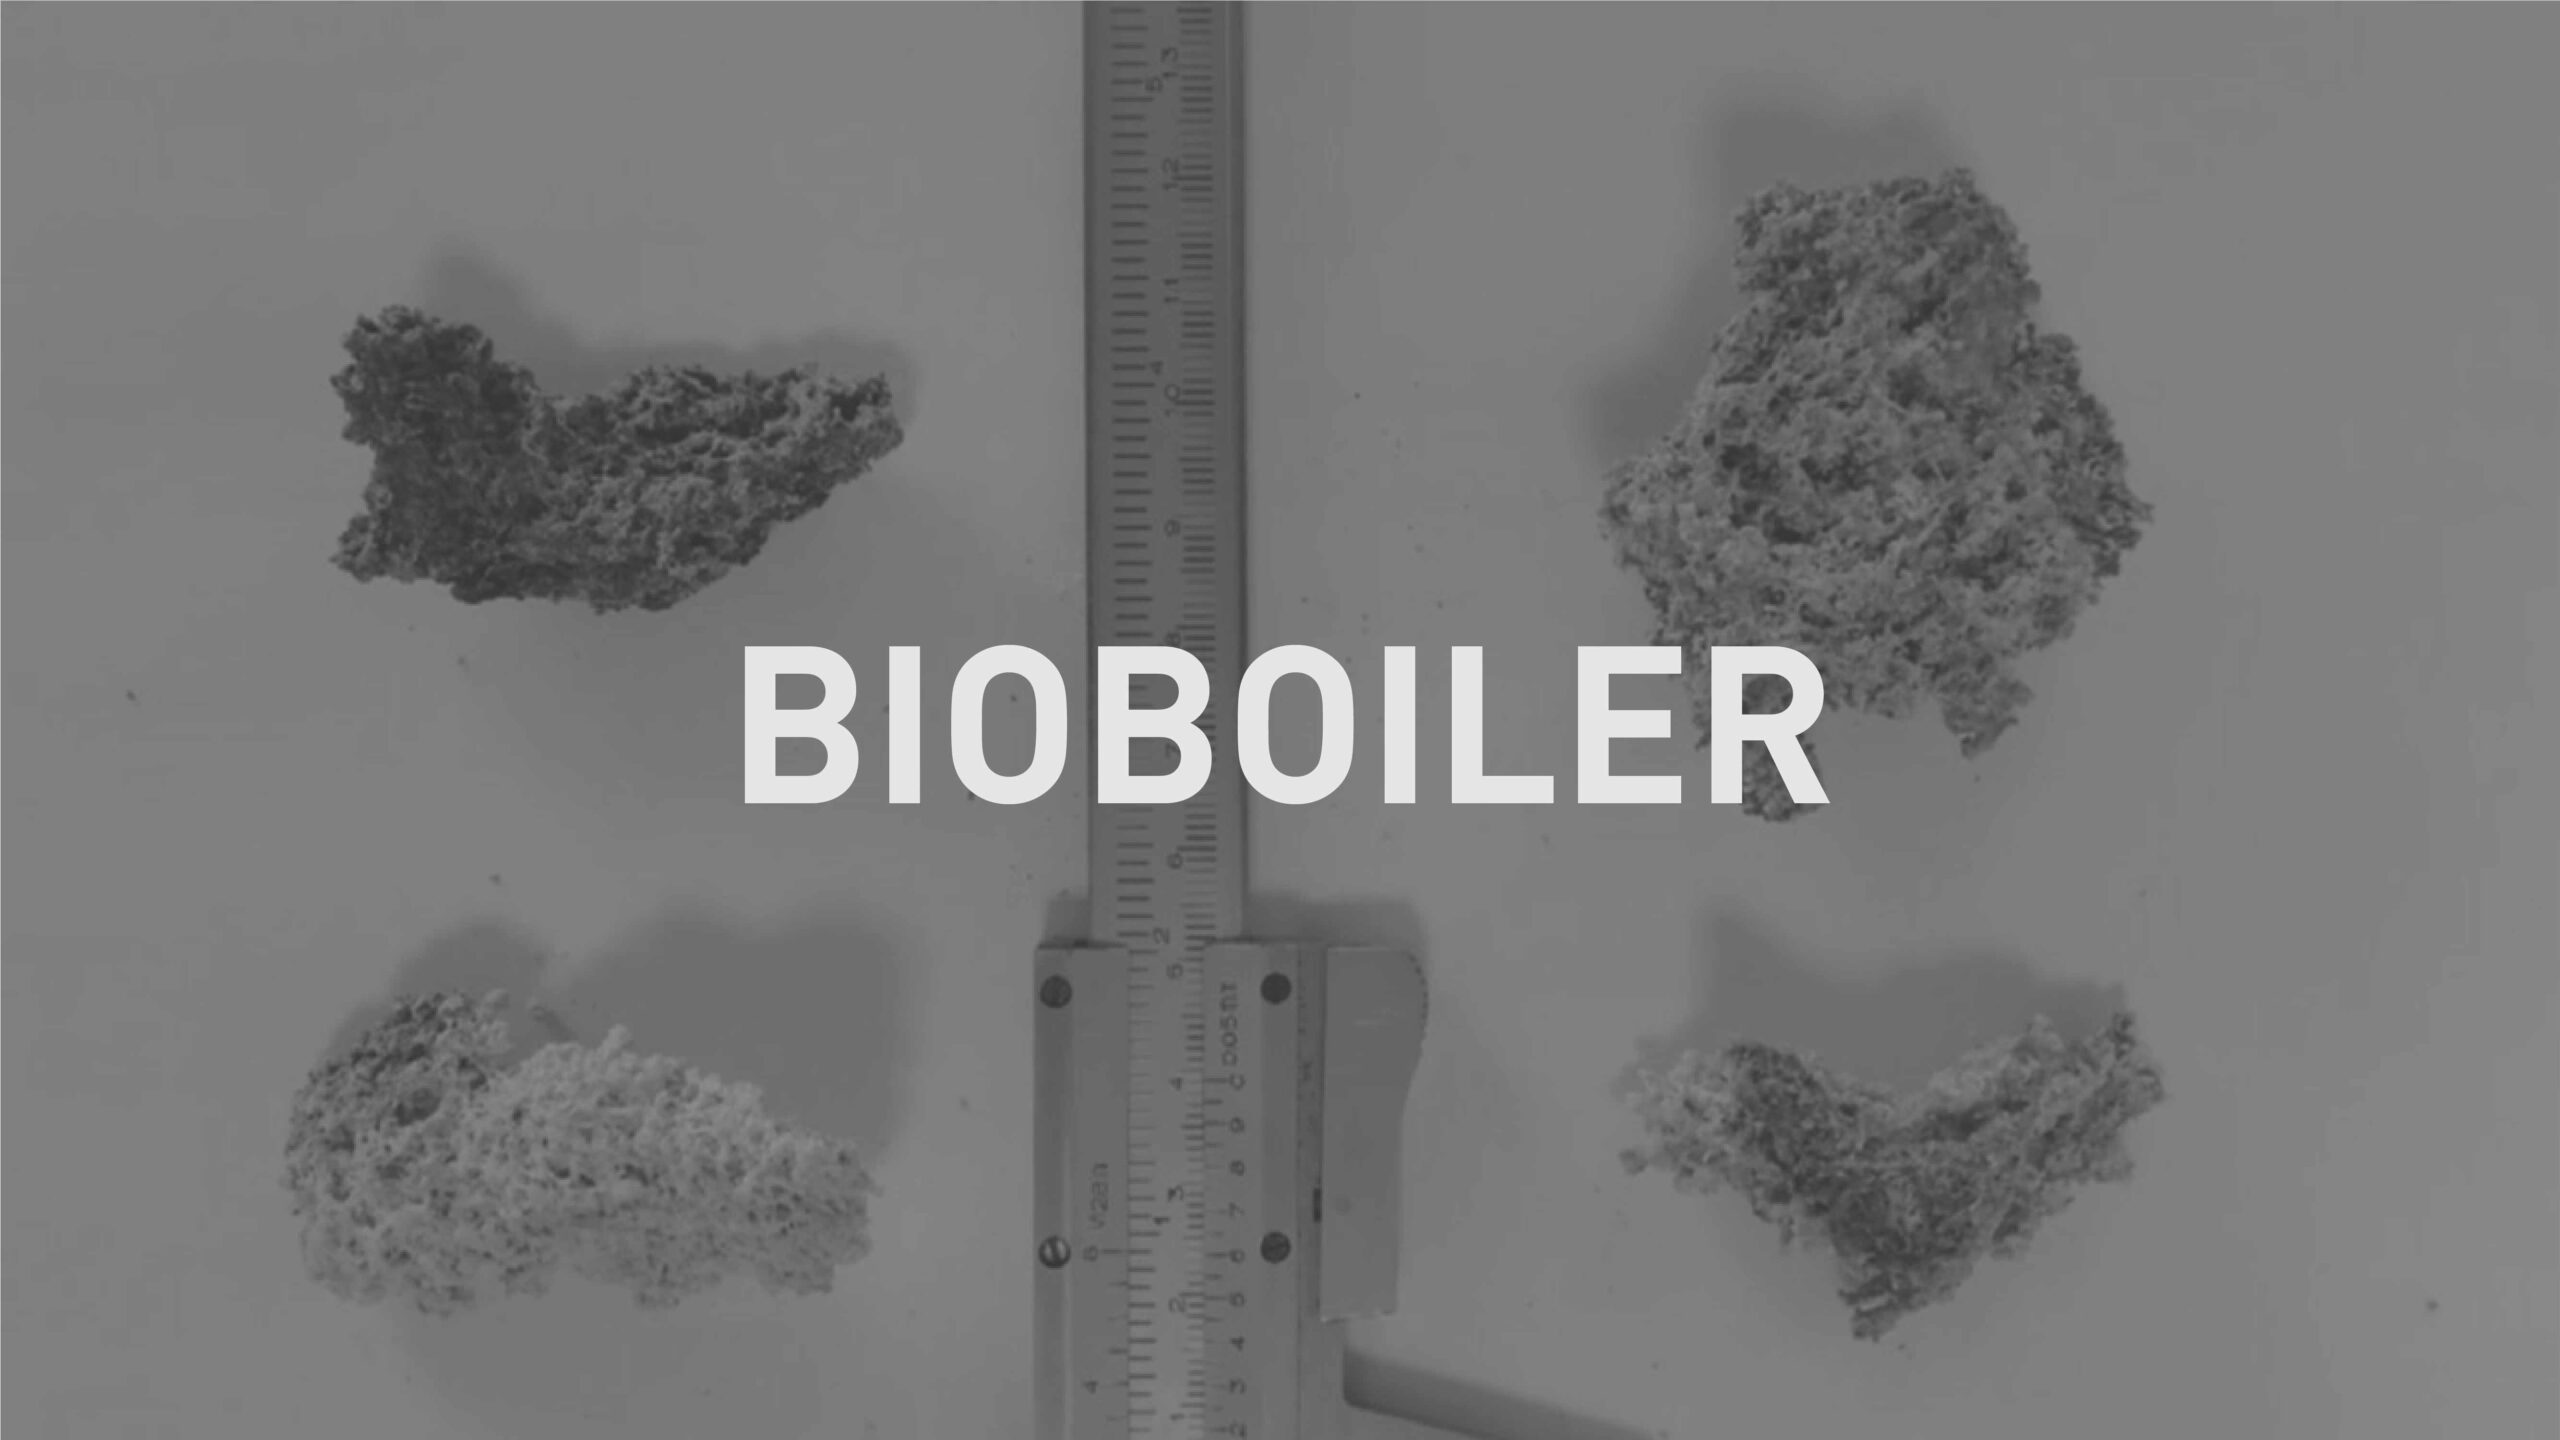 BioBoiler